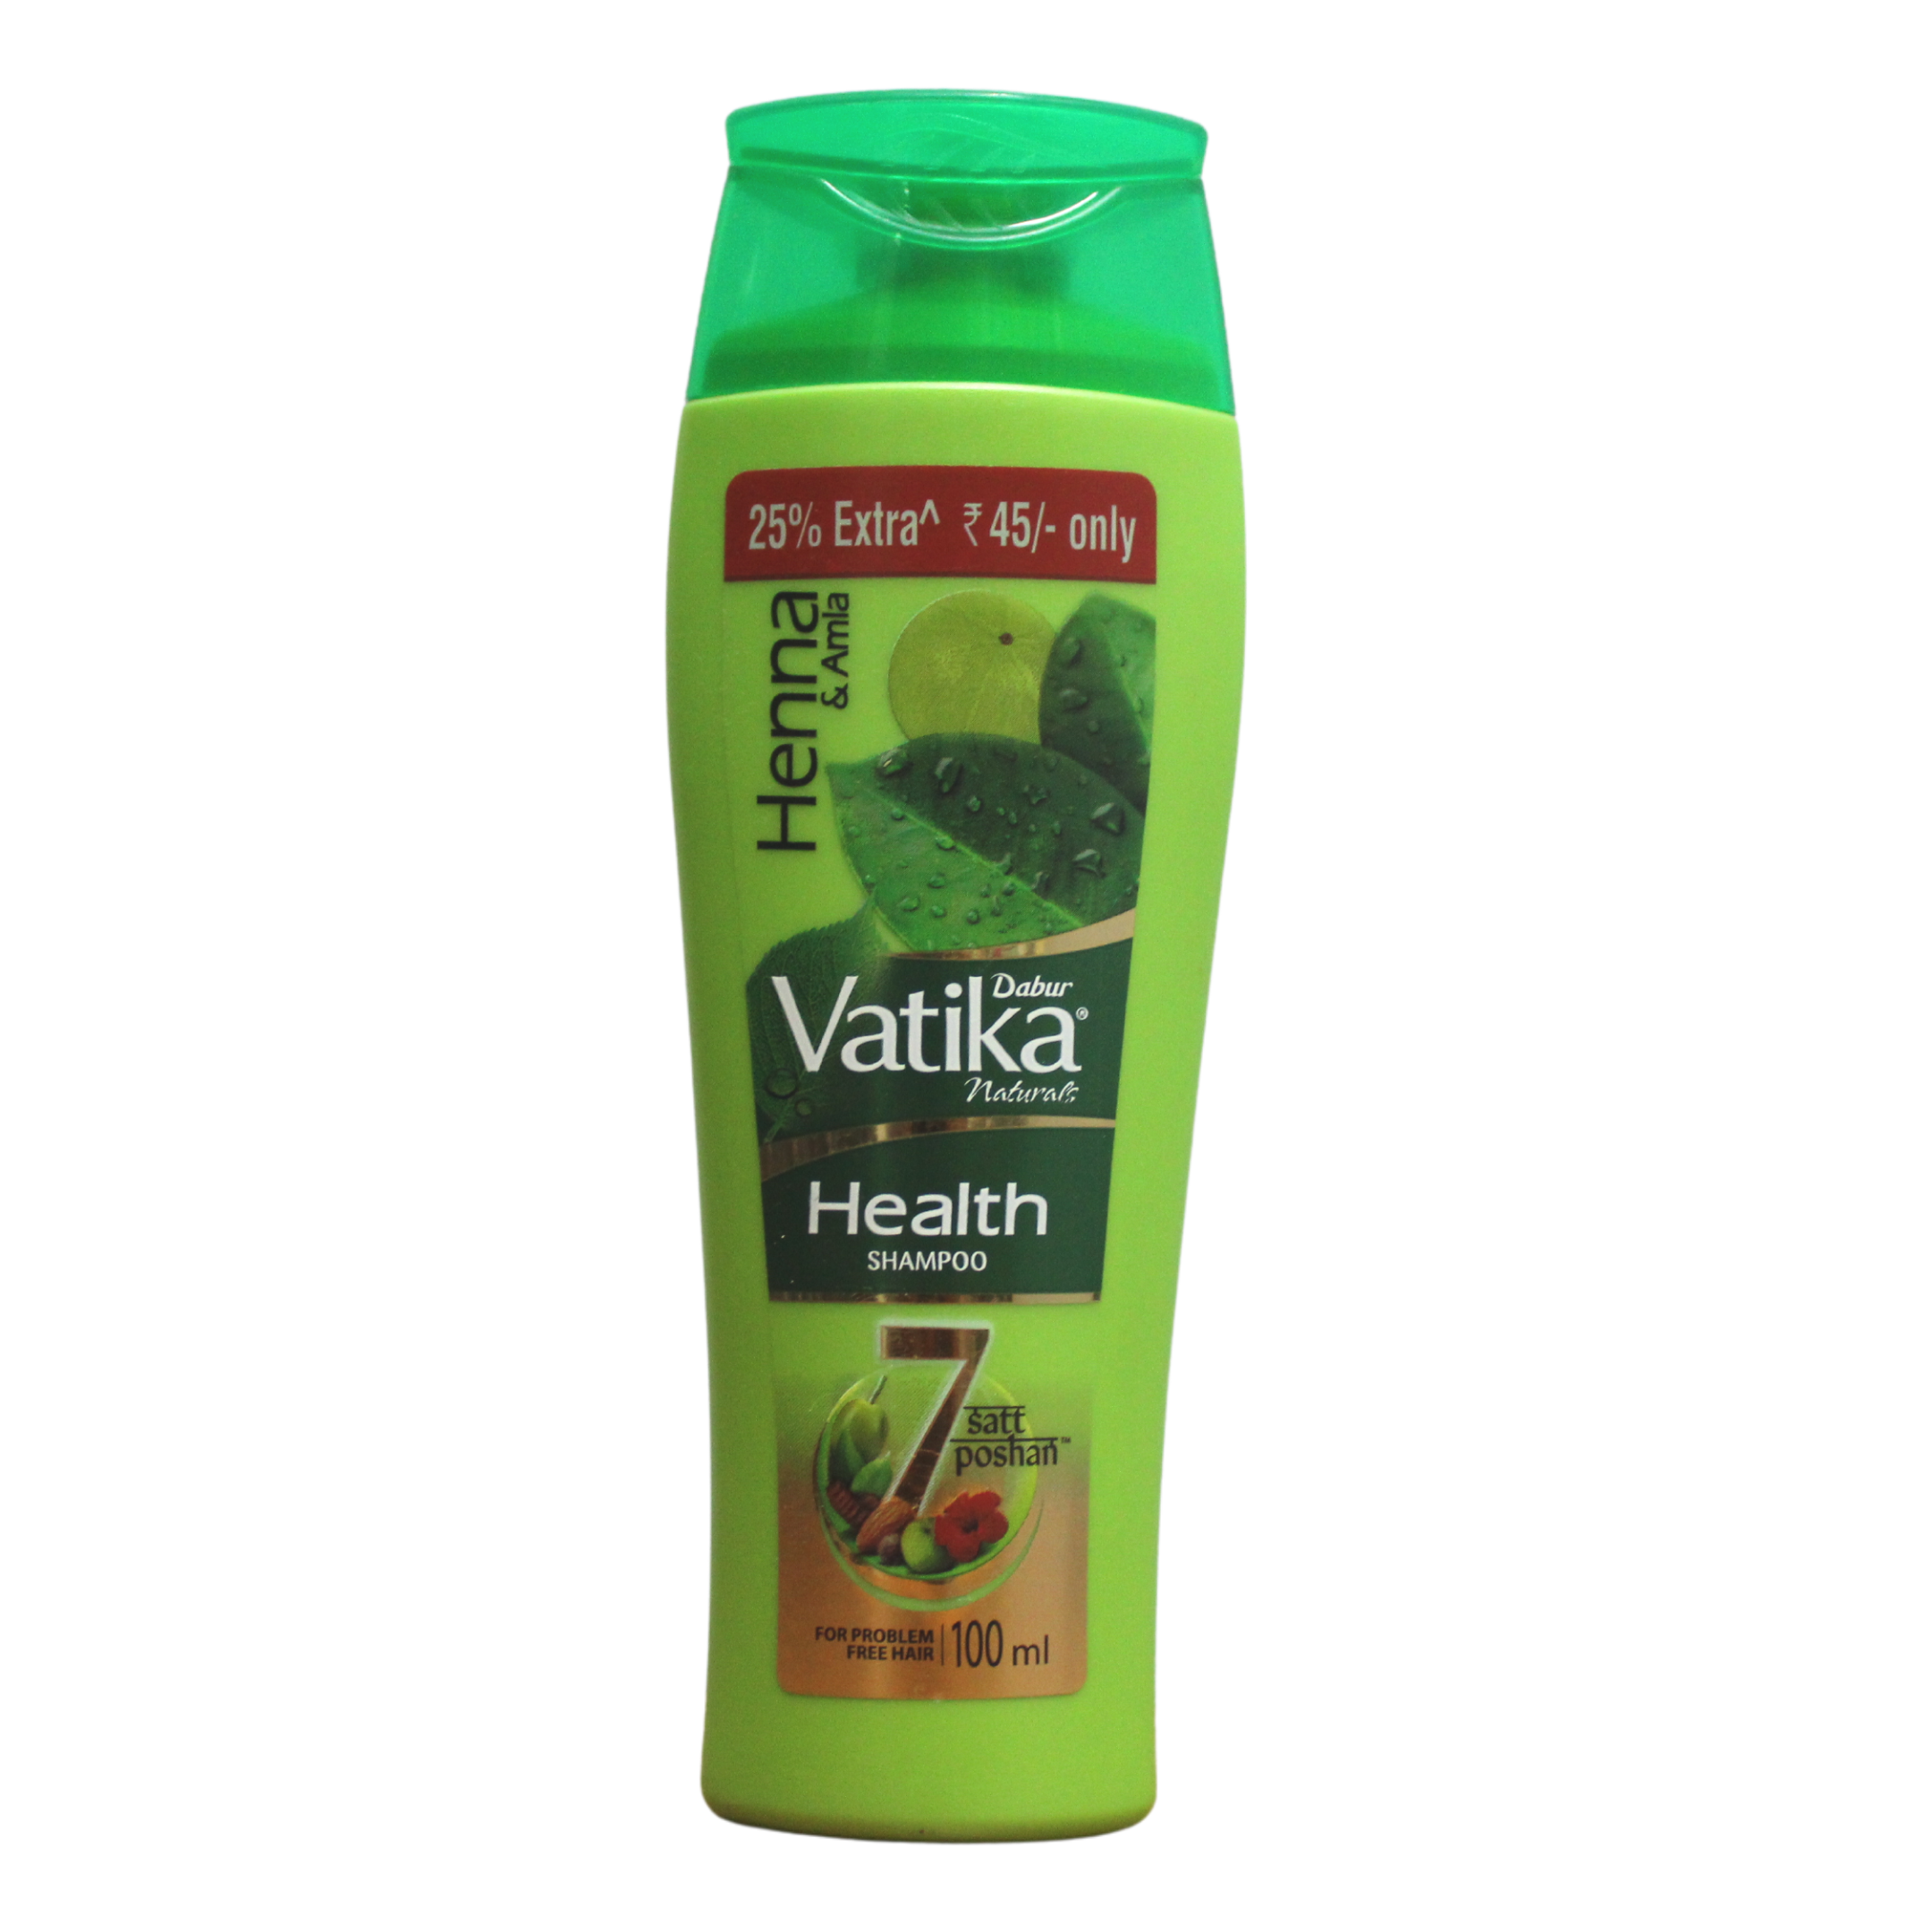 Shop Dabur Vatika Health Shampoo - 100ml at price 45.00 from Dabur Online - Ayush Care